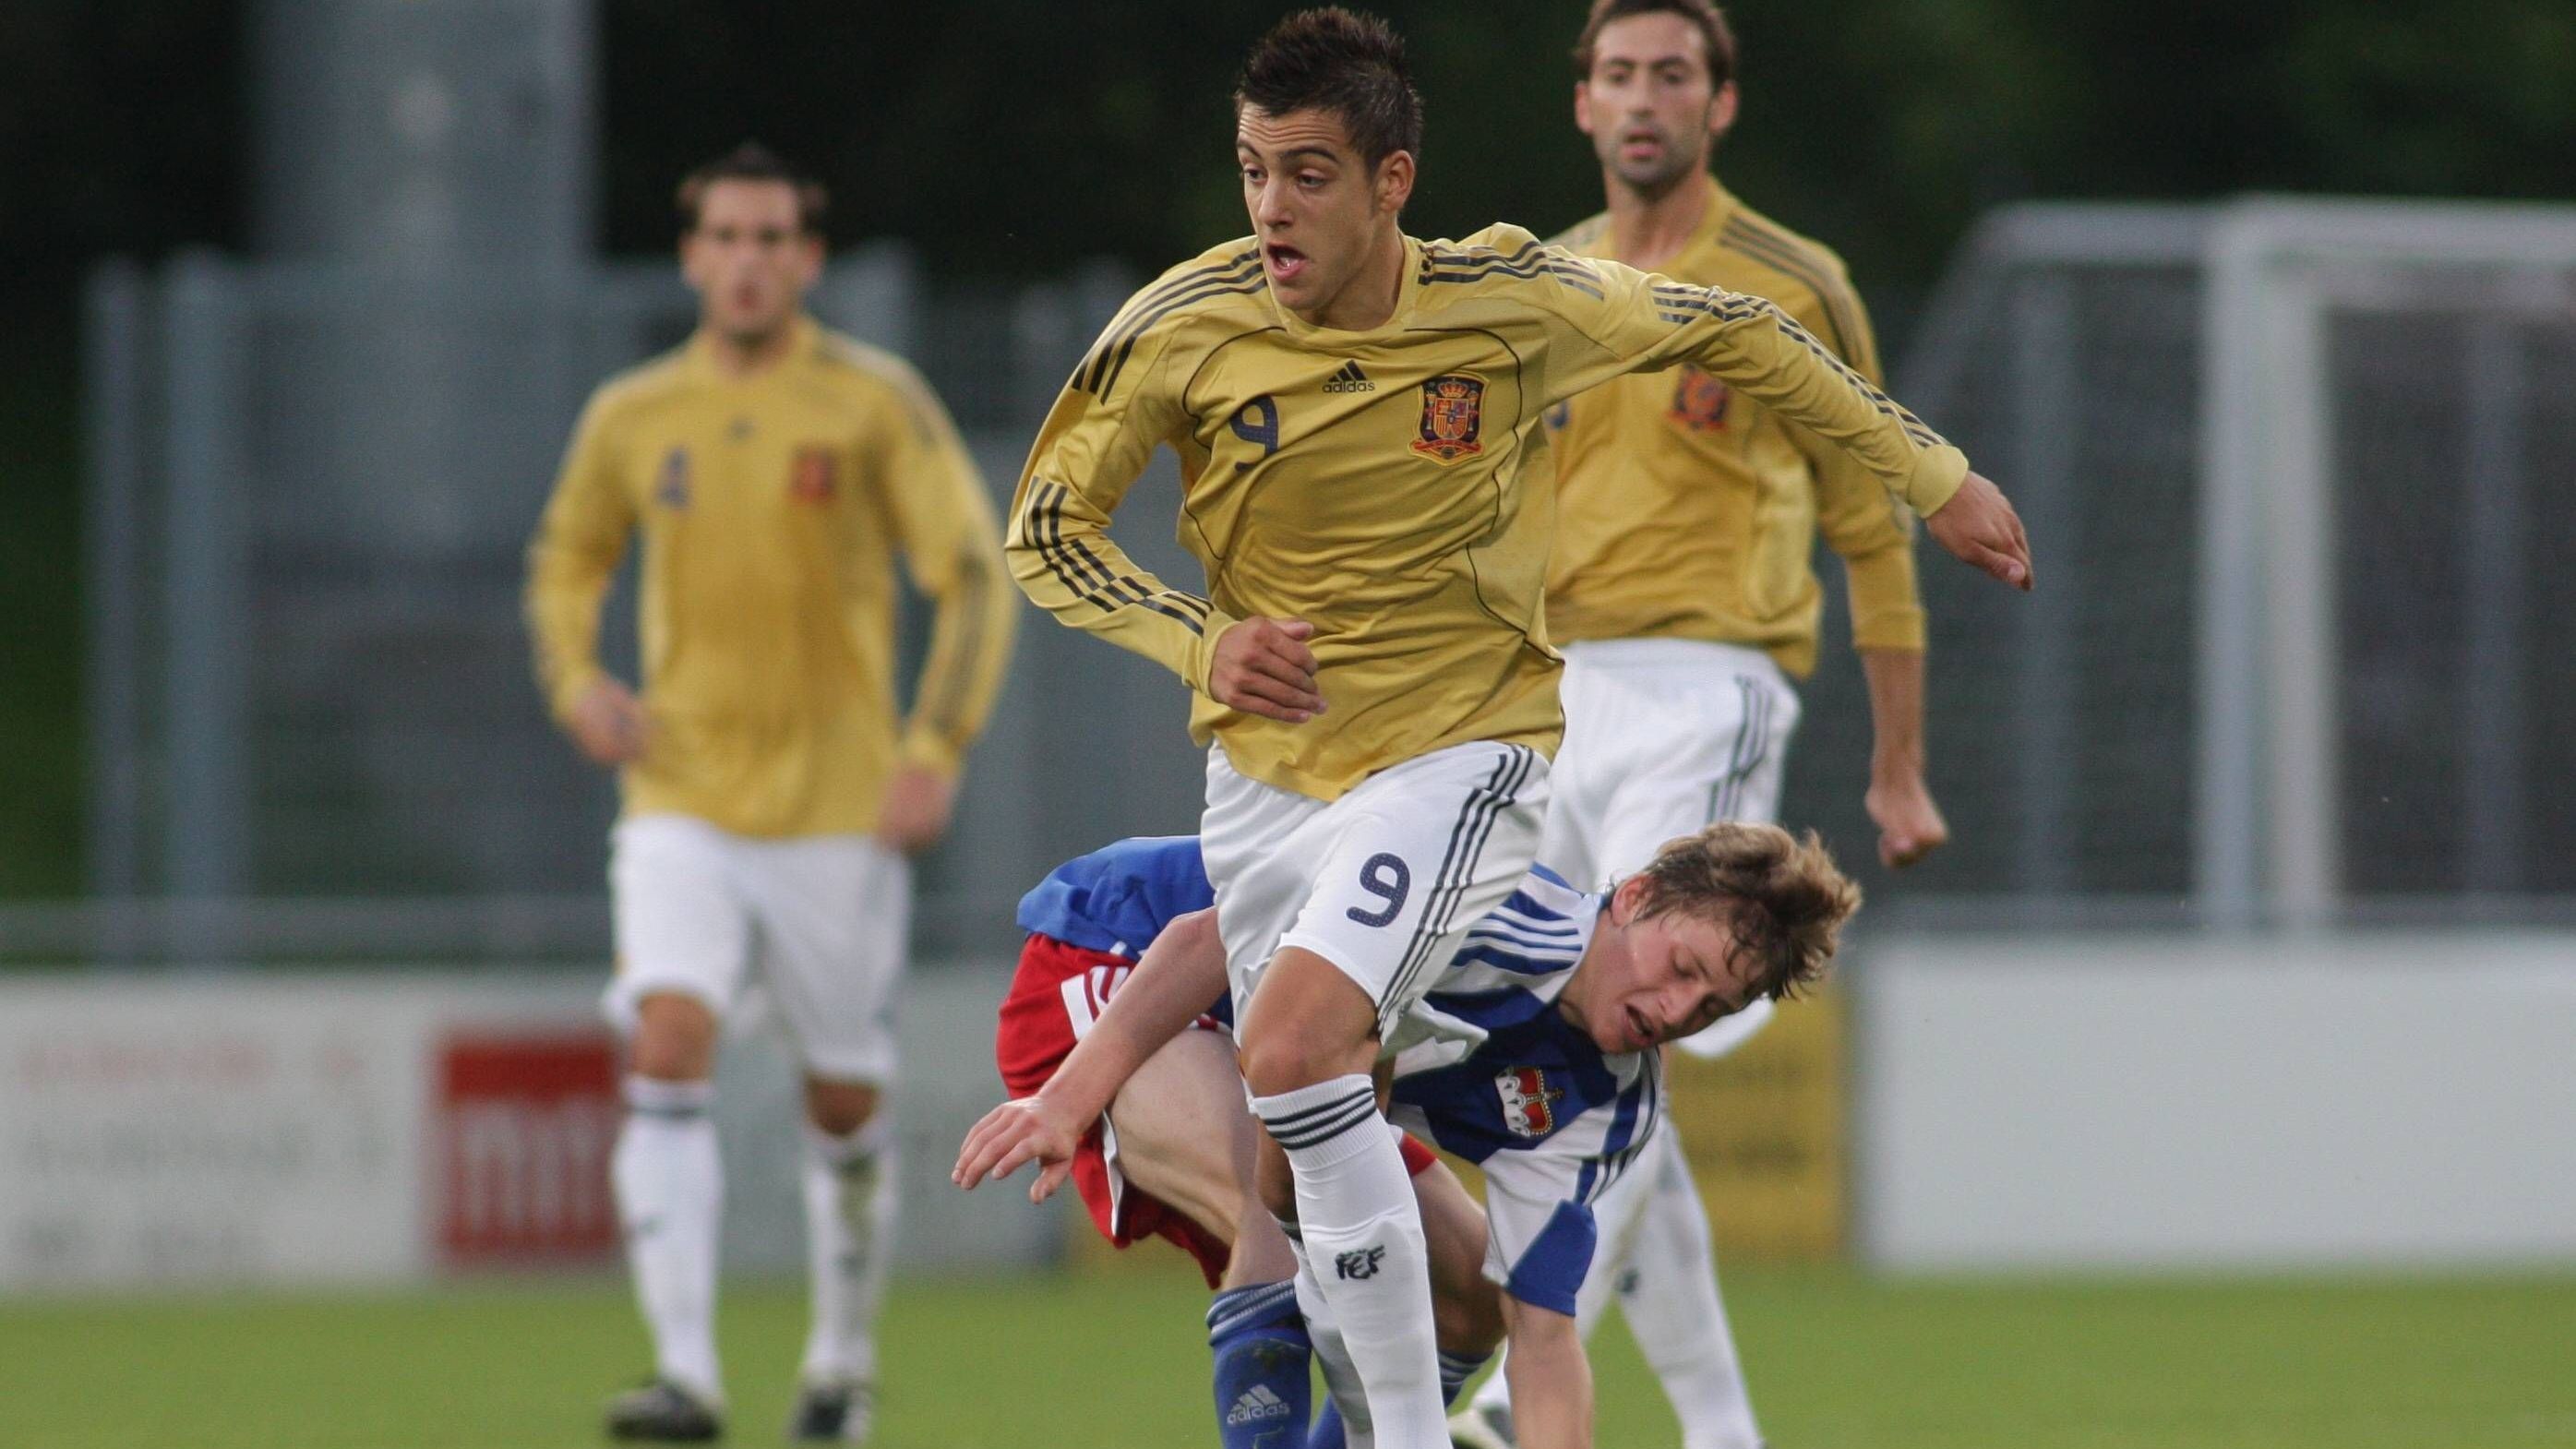 <strong>Erste Schritte im Profibereich und Interesse aus Madrid</strong><br>2008 machte Joselu seine ersten Gehversuche im Seniorenfußball, in der zweiten Mannschaft von Vigo, die damals in der 3. Liga Spaniens spielte. 2009 gelang ihm sein erster Treffer bei der ersten Mannschaft gegen Cadiz. Bereits damals beobachtete ihn Real Madrid ganz genau. Kantige Stürmer waren rares Gut in Spanien.